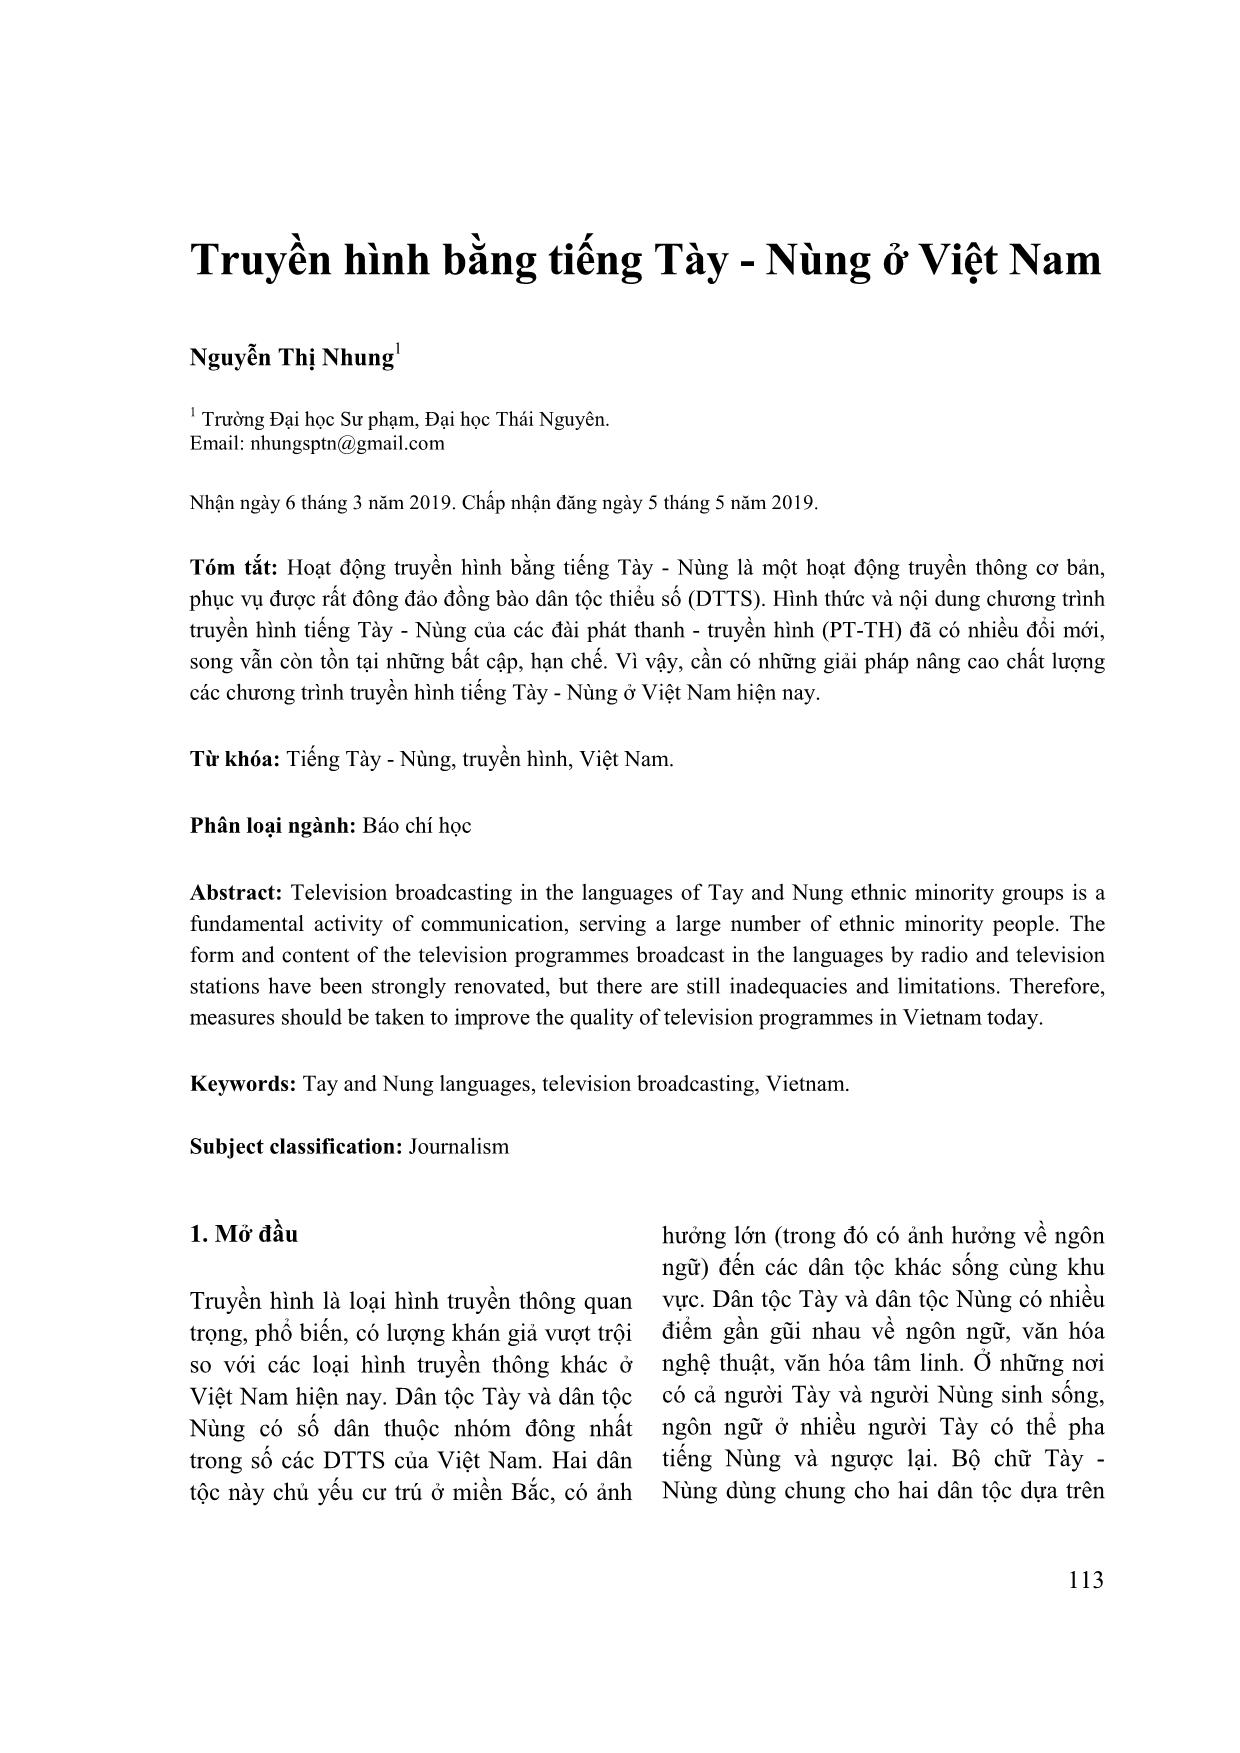 Truyền hình bằng tiếng Tày-Nùng ở Việt Nam trang 1